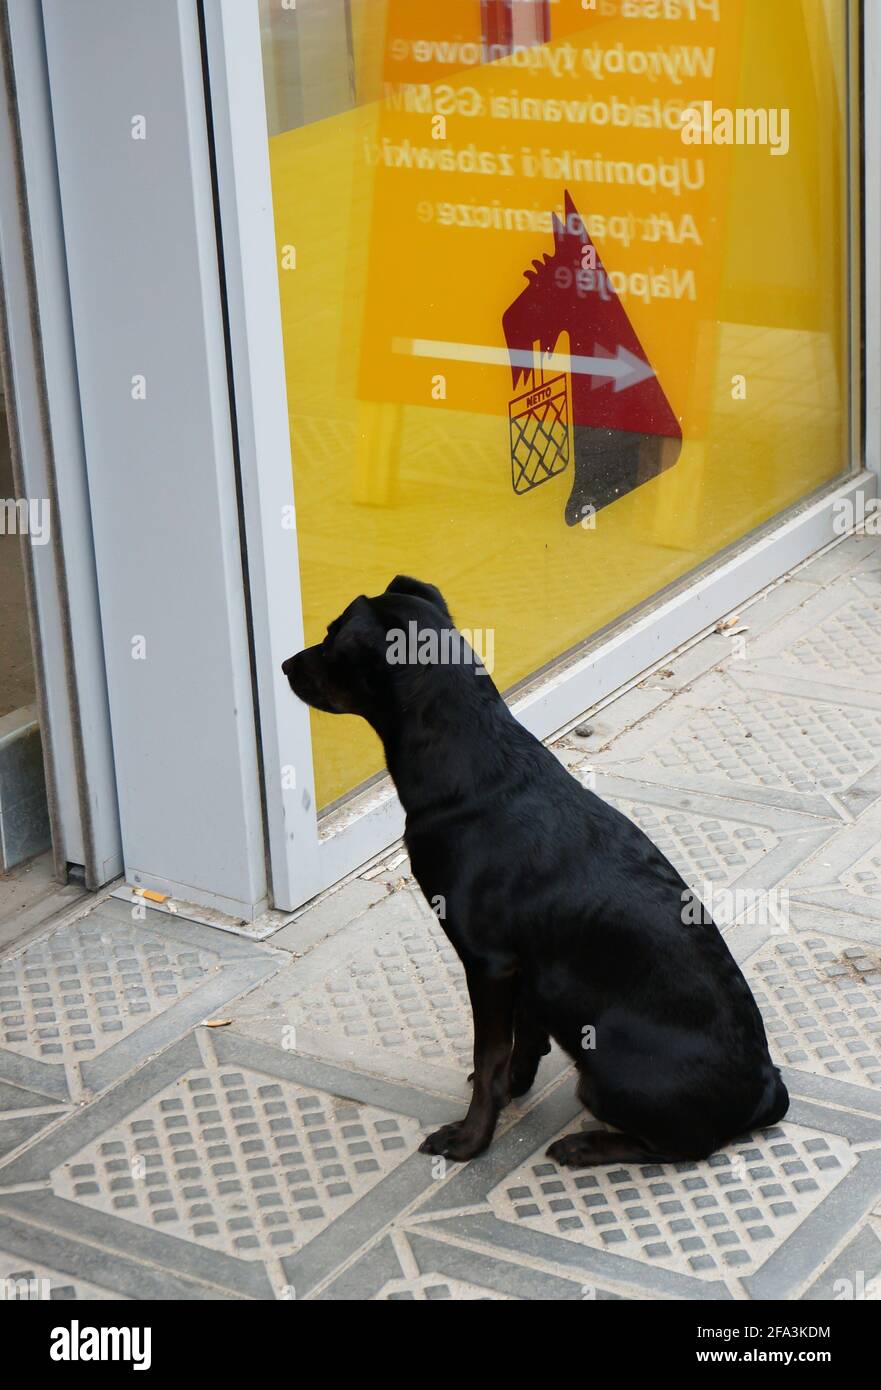 POZNAN, POLOGNE - 09 juin 2013 : chien noir ressemblant au logo du supermarché devant l'entrée Banque D'Images